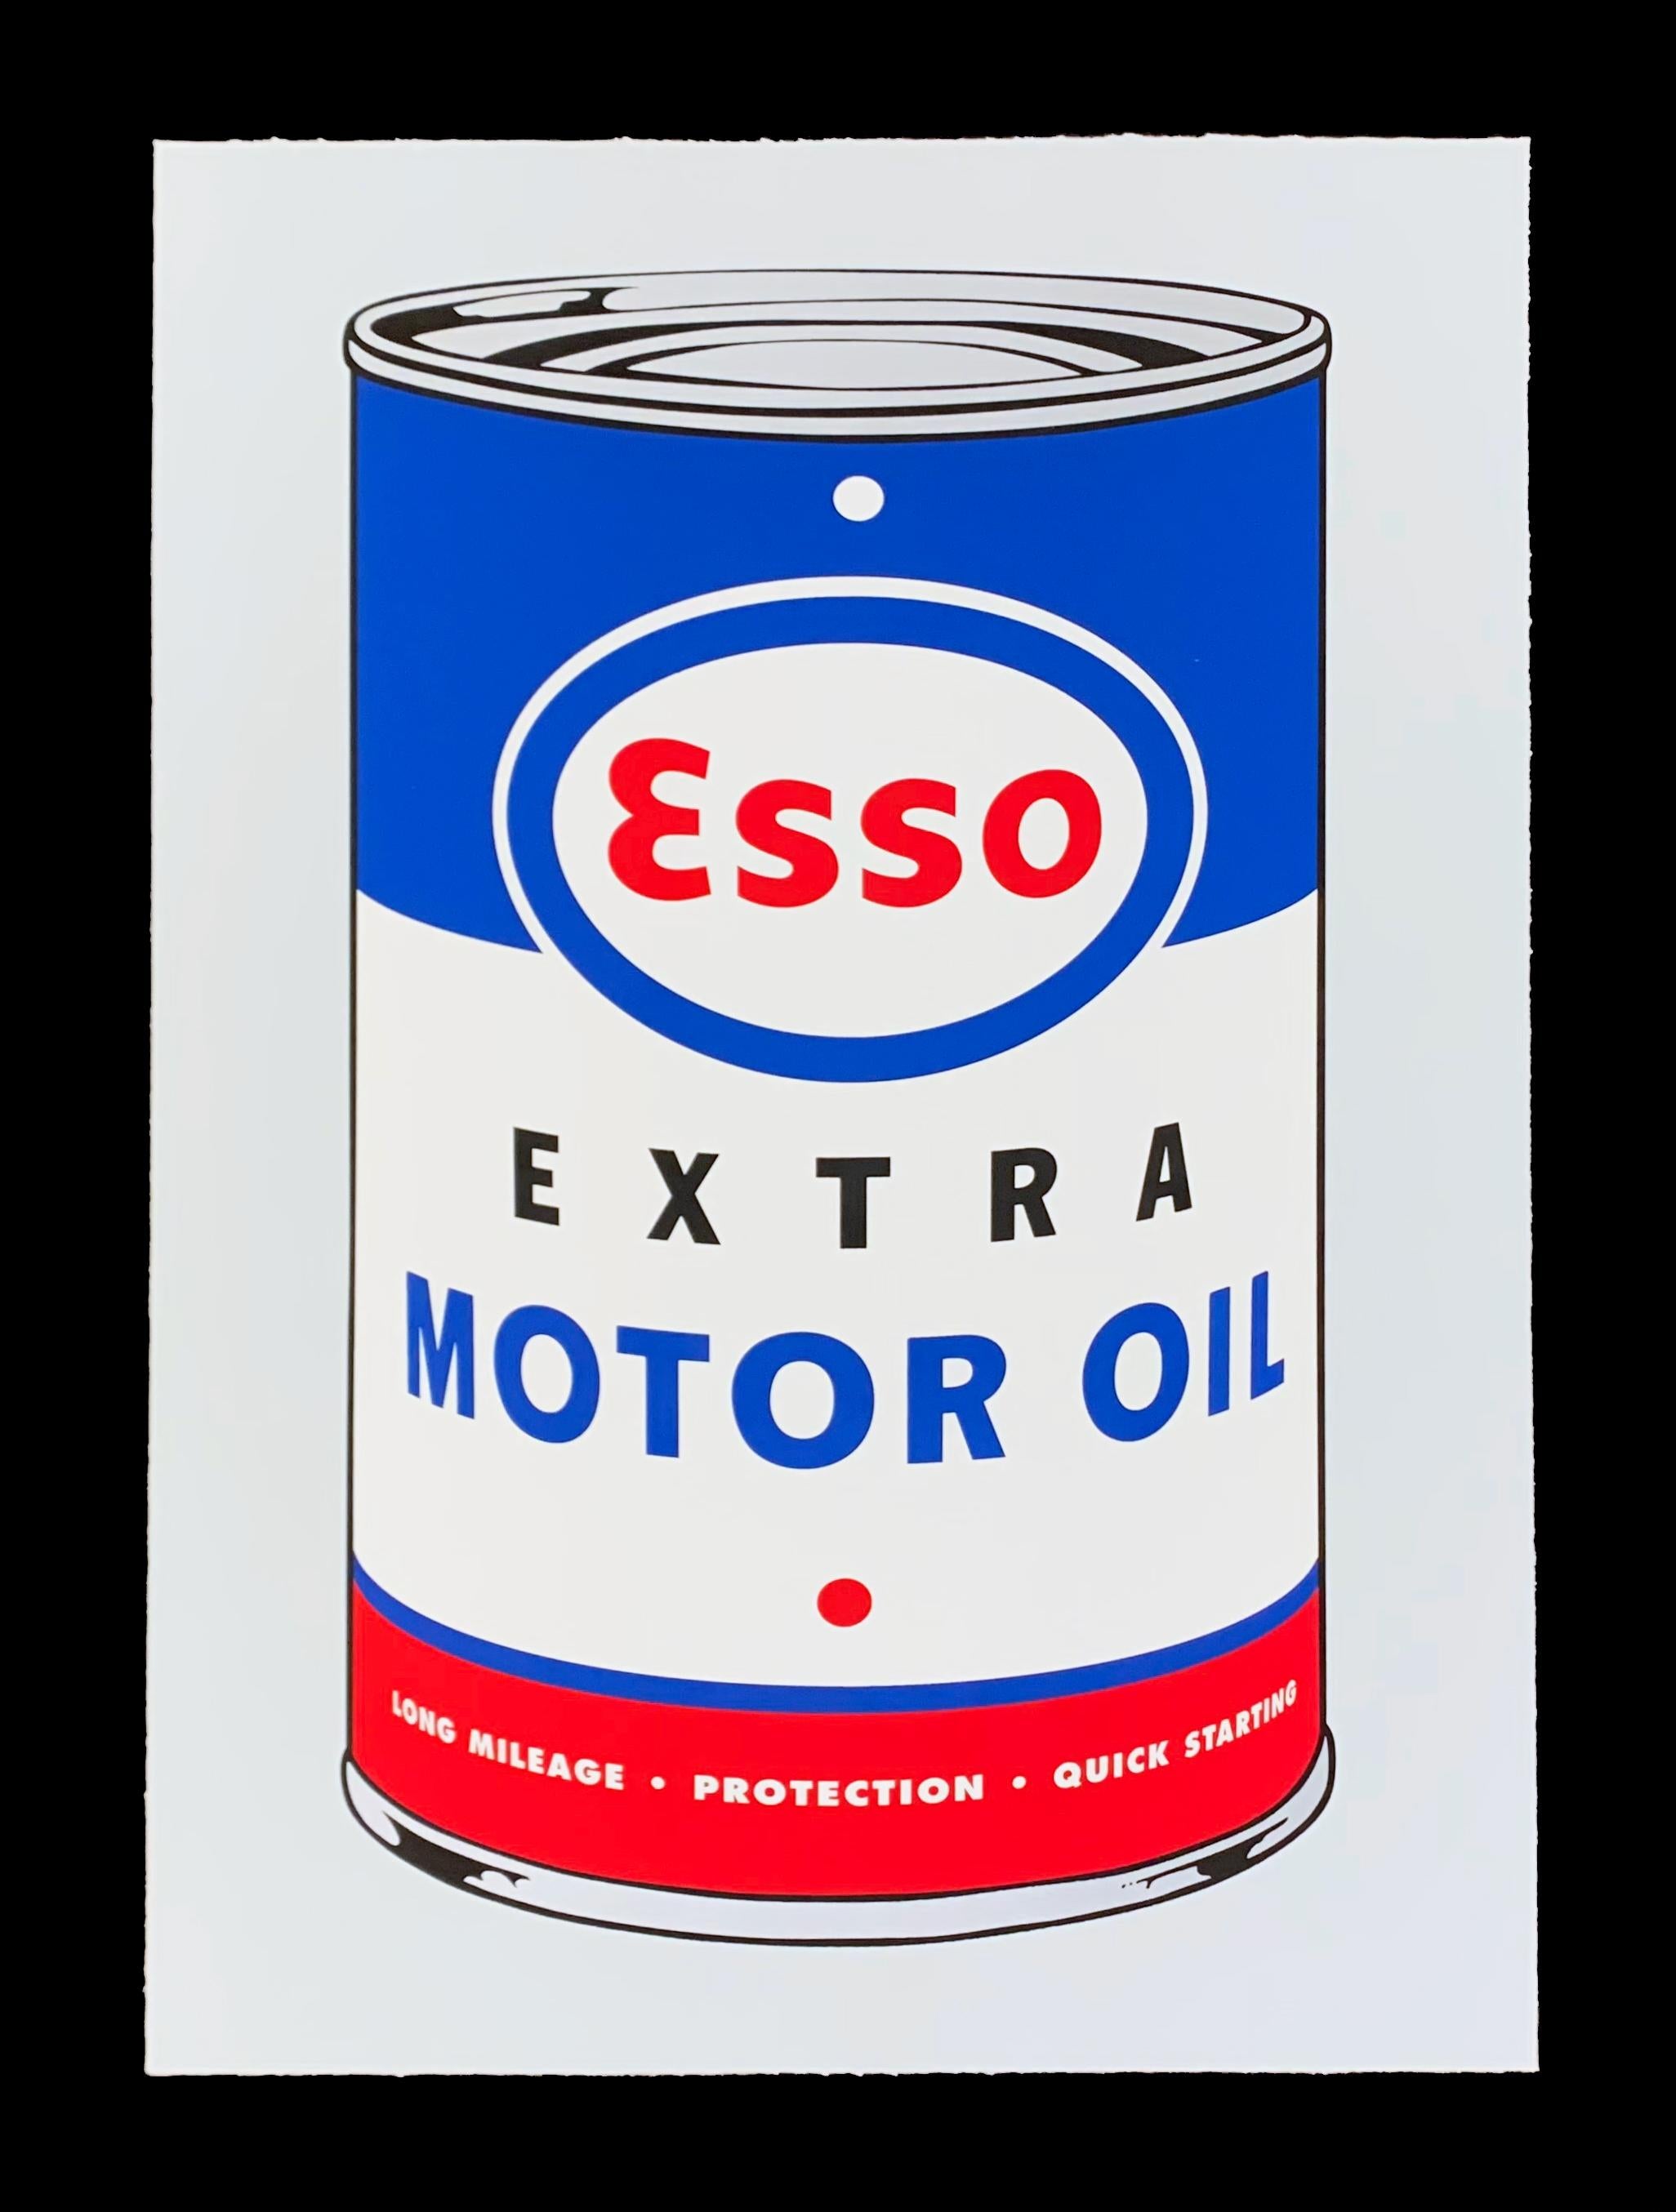 Masterpieces in Oils: Esso - Print by Heiner Meyer